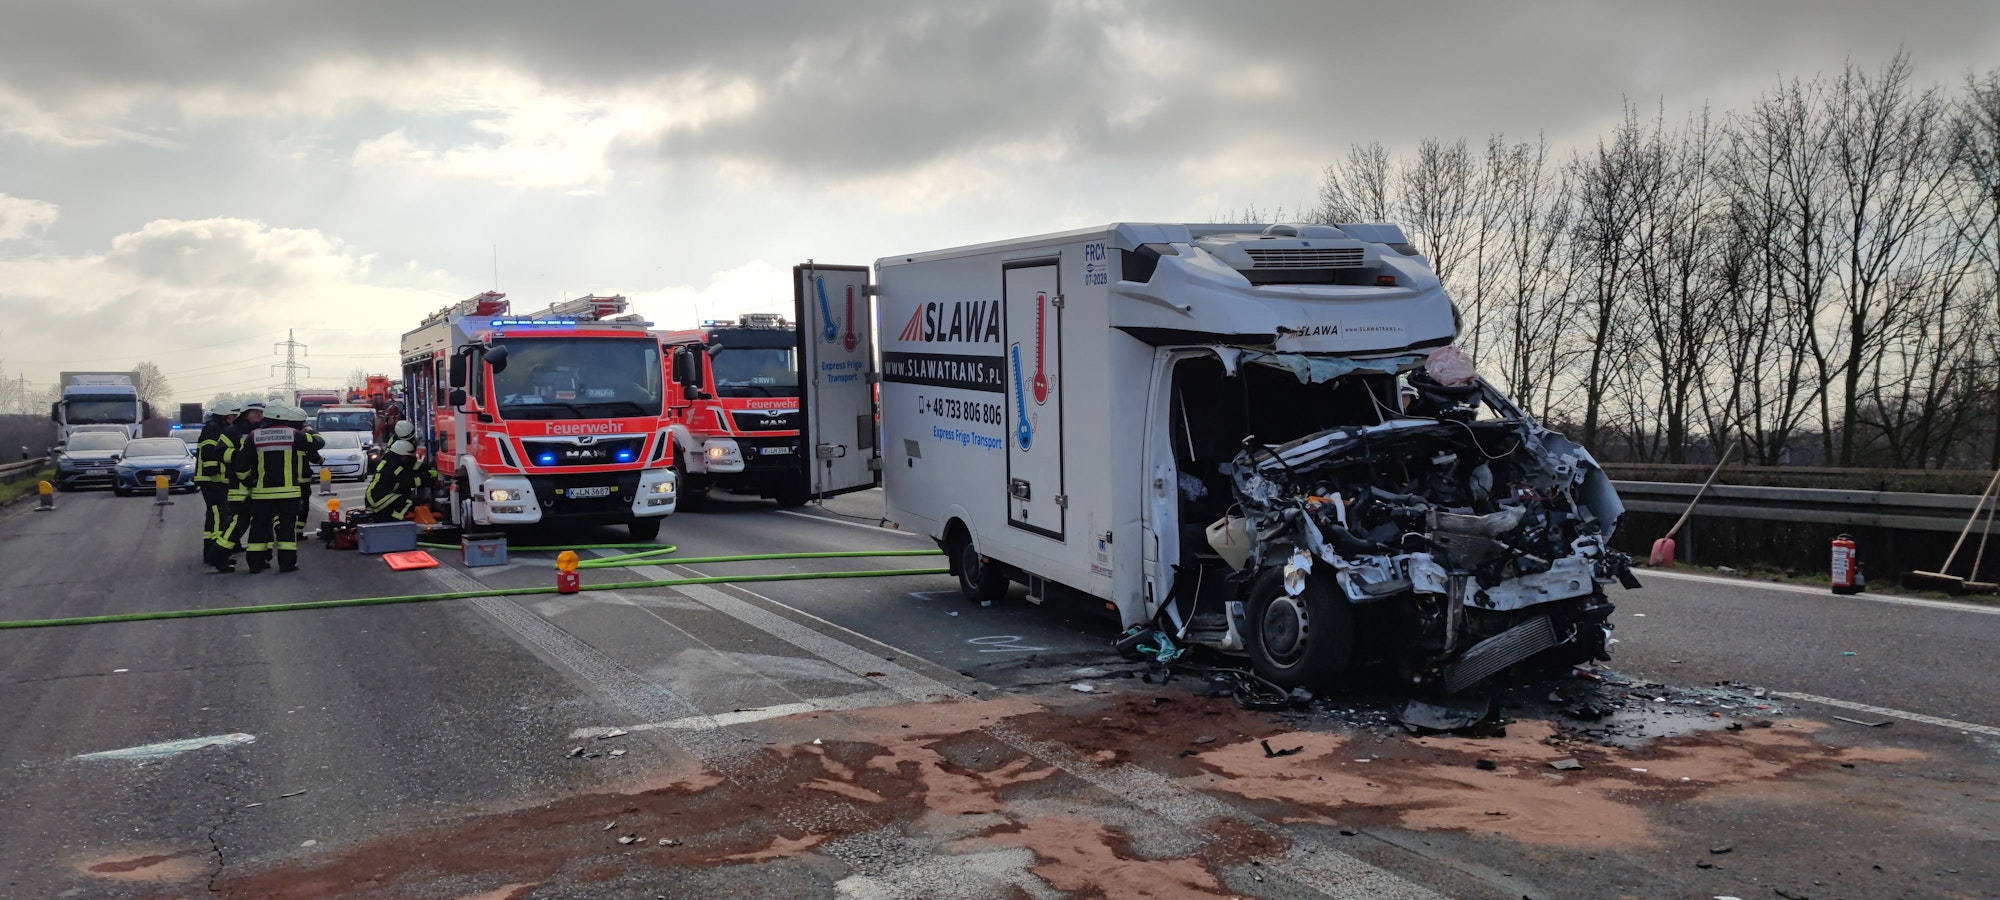 Schwerer Unfall auf der A59 bei Köln. Die Autobahn ist nach dem Unfall voll gesperrt.